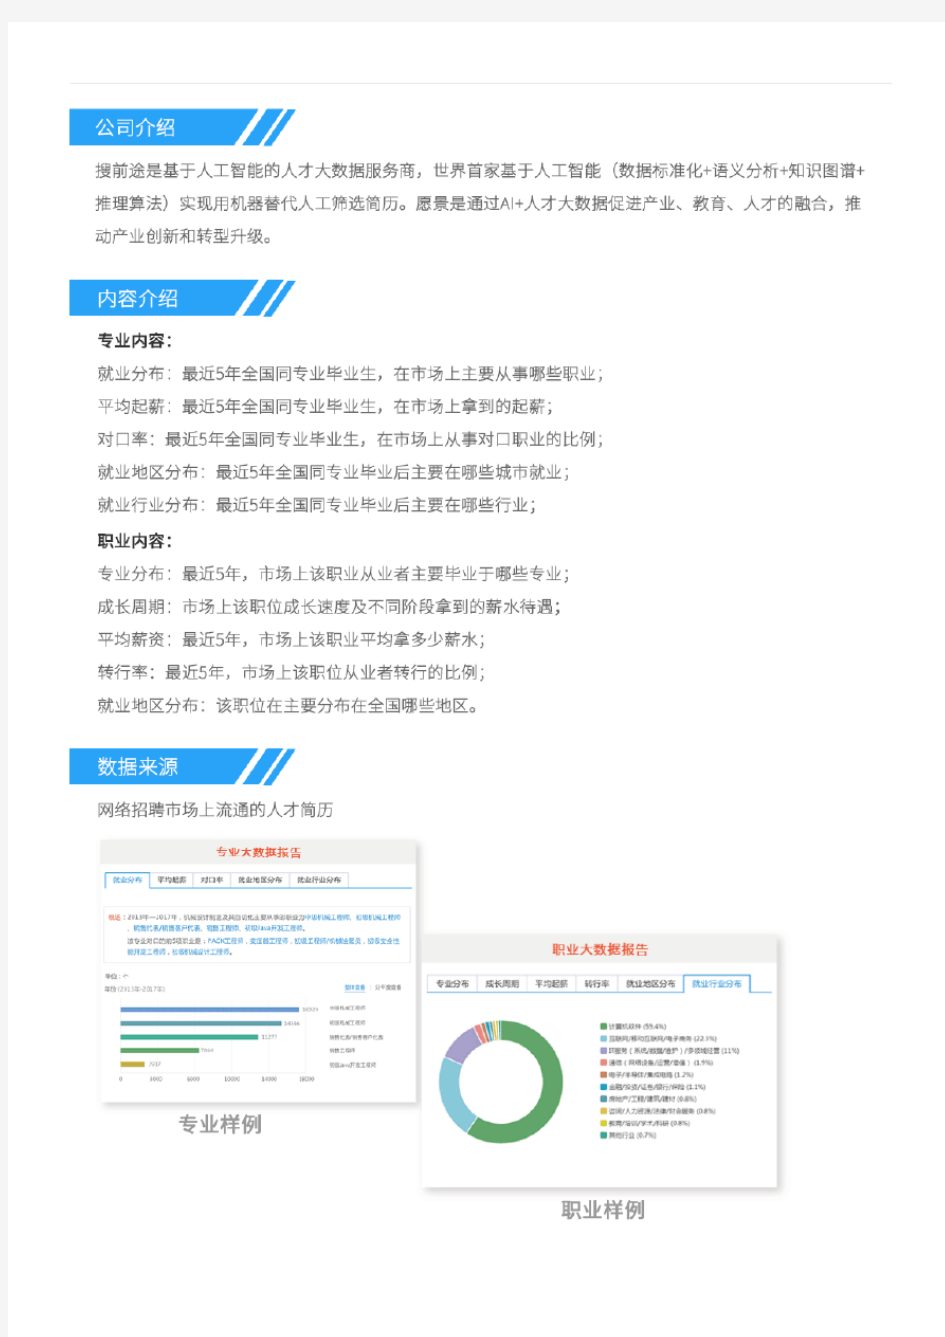 2013-2017年北京大学统计学专业毕业生就业大数据报告